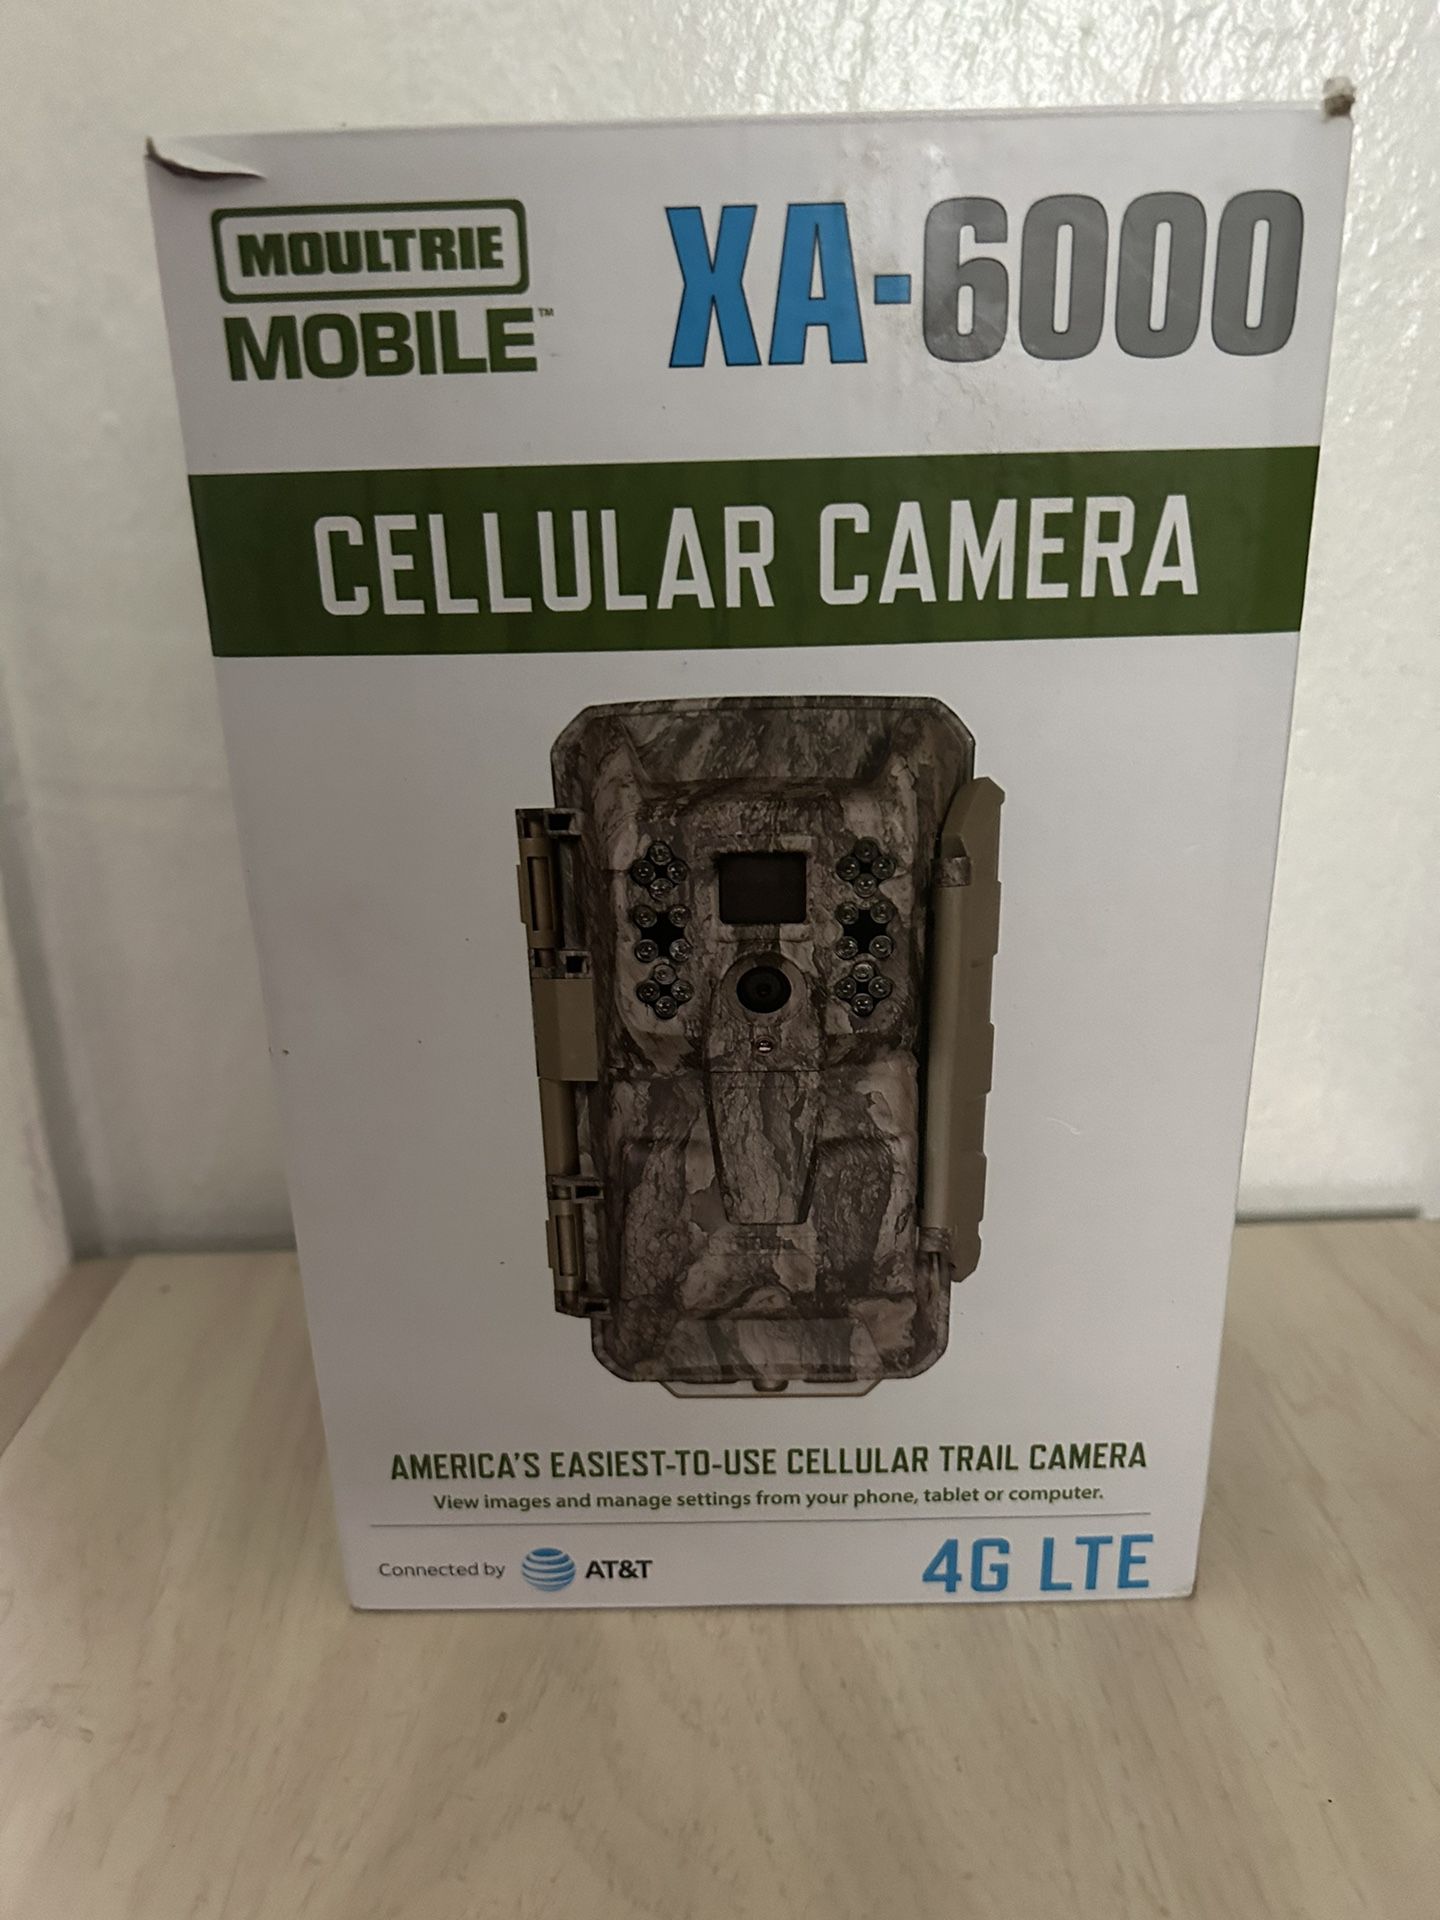 Cellular Camera